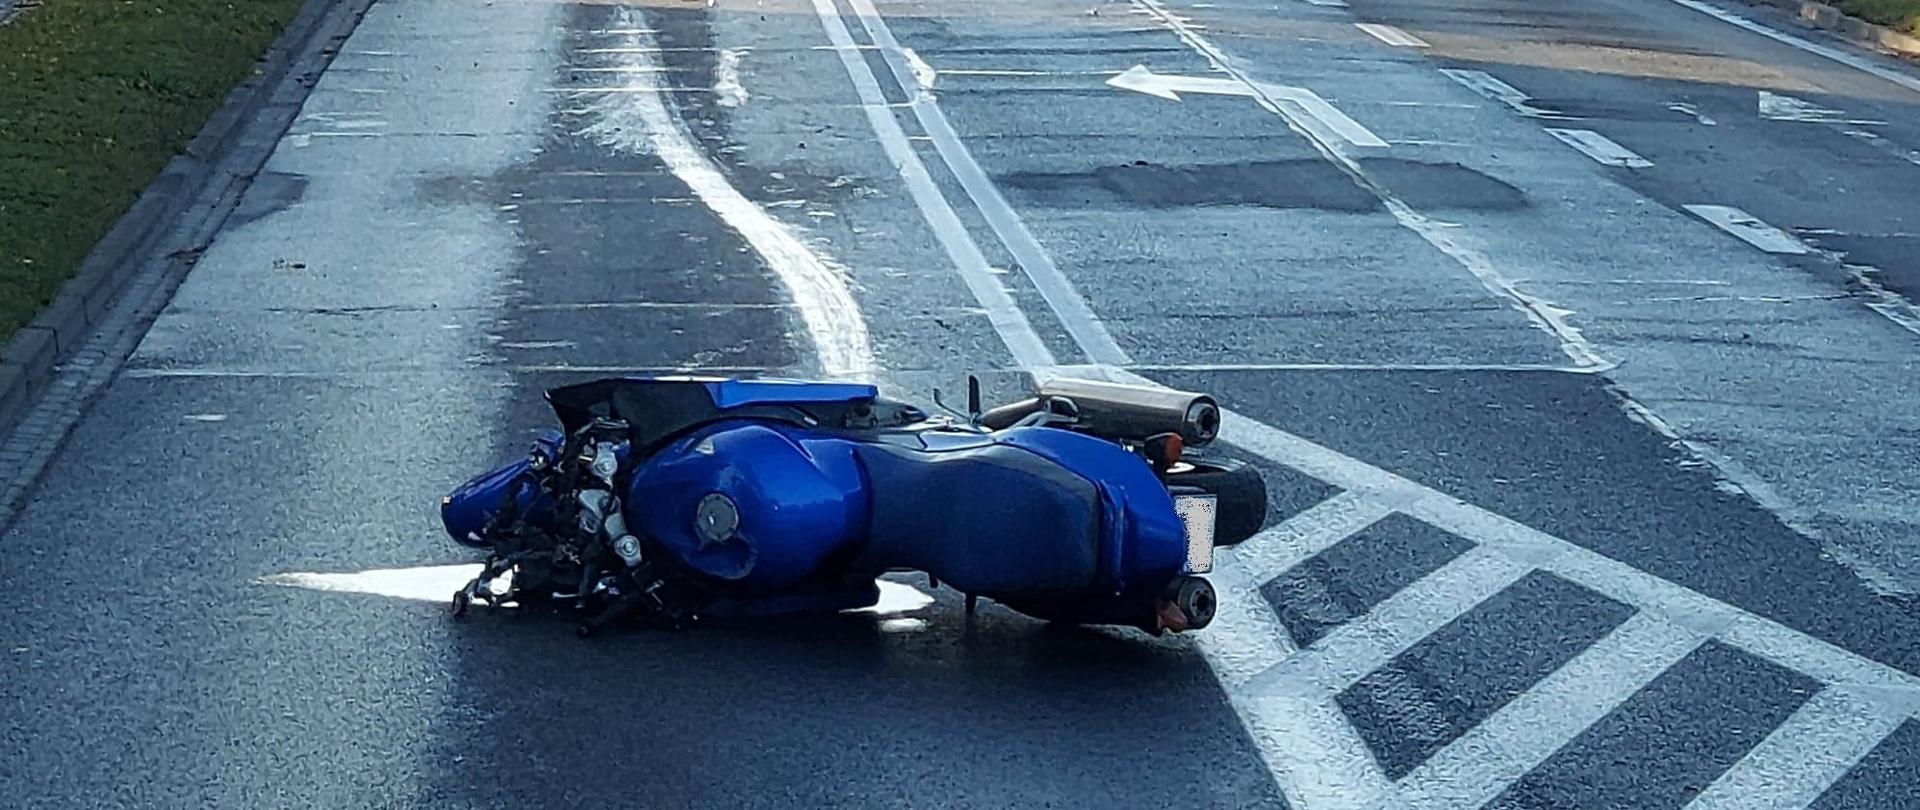 Zderzenie samochodu osobowego z motocyklem. Motocykl leży na jezdni. 